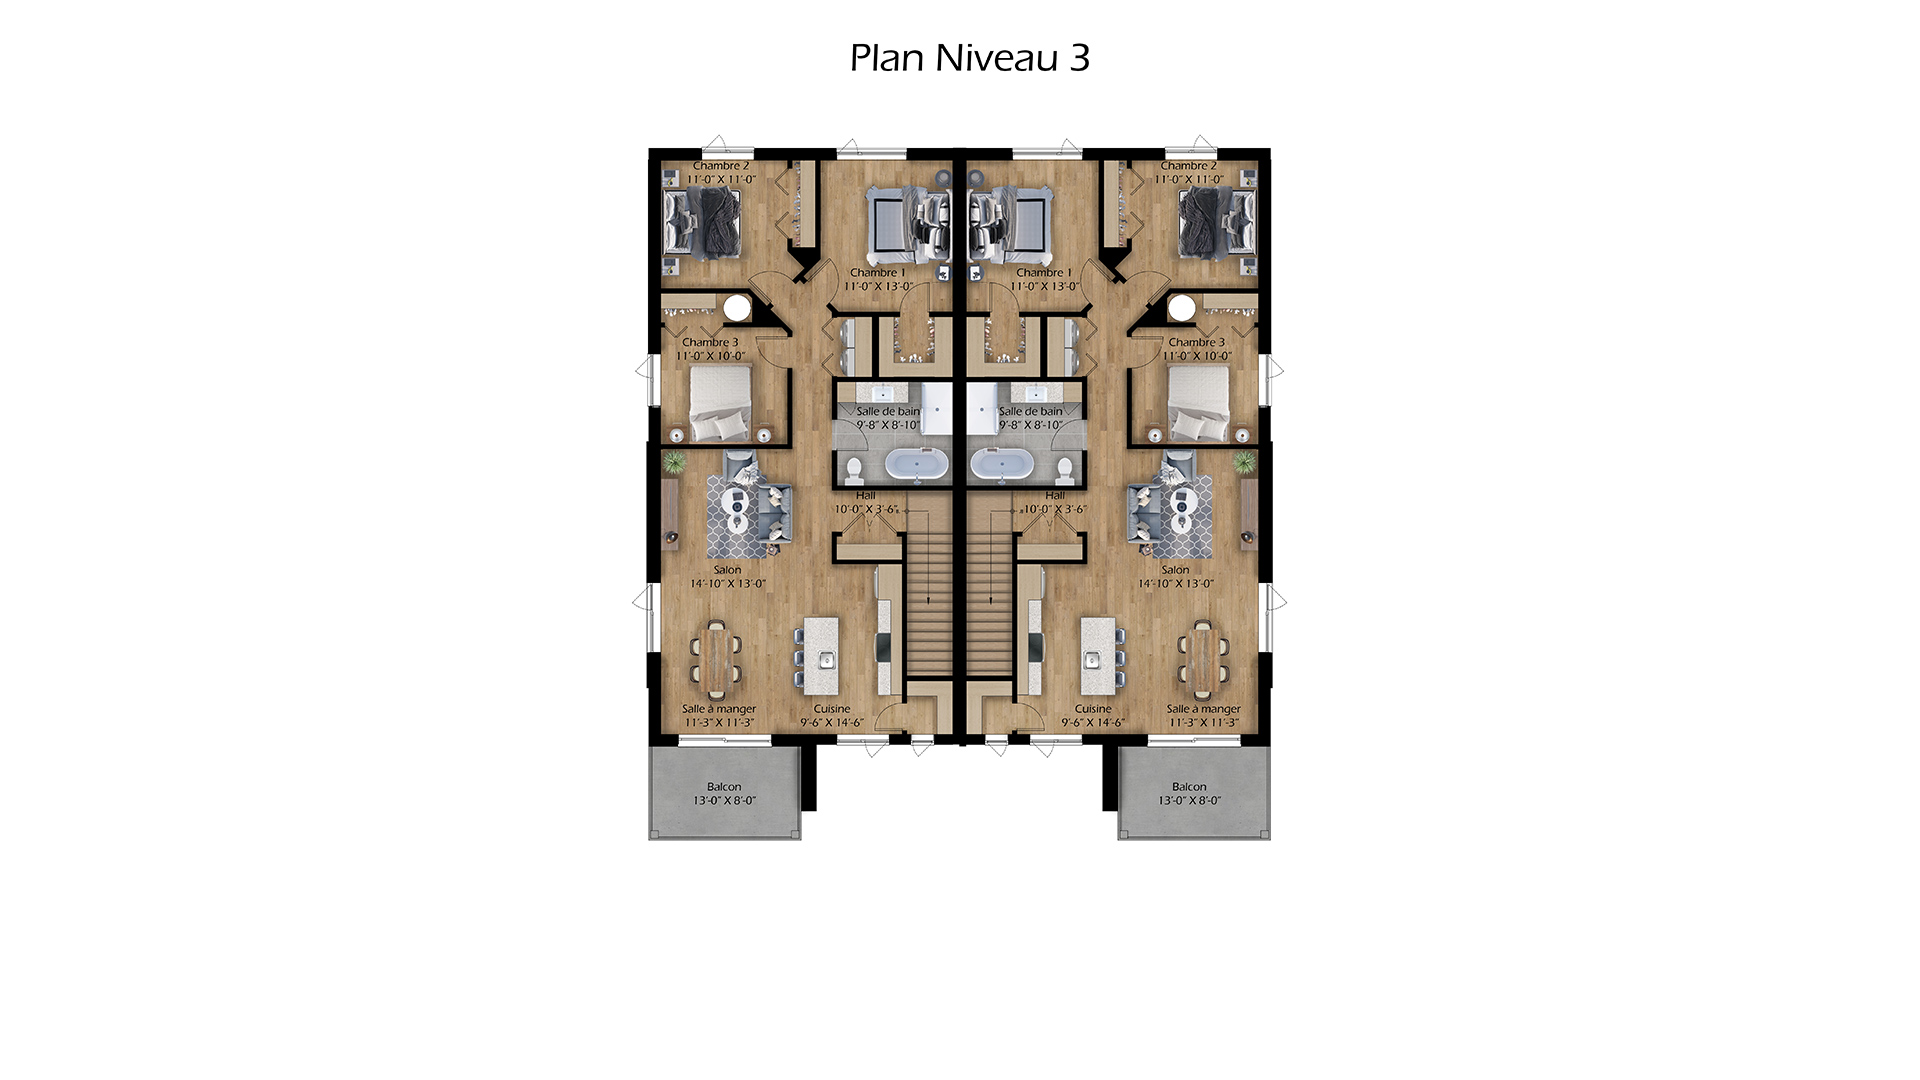 groupe-odyssee-domicilium-plan-niveau-3